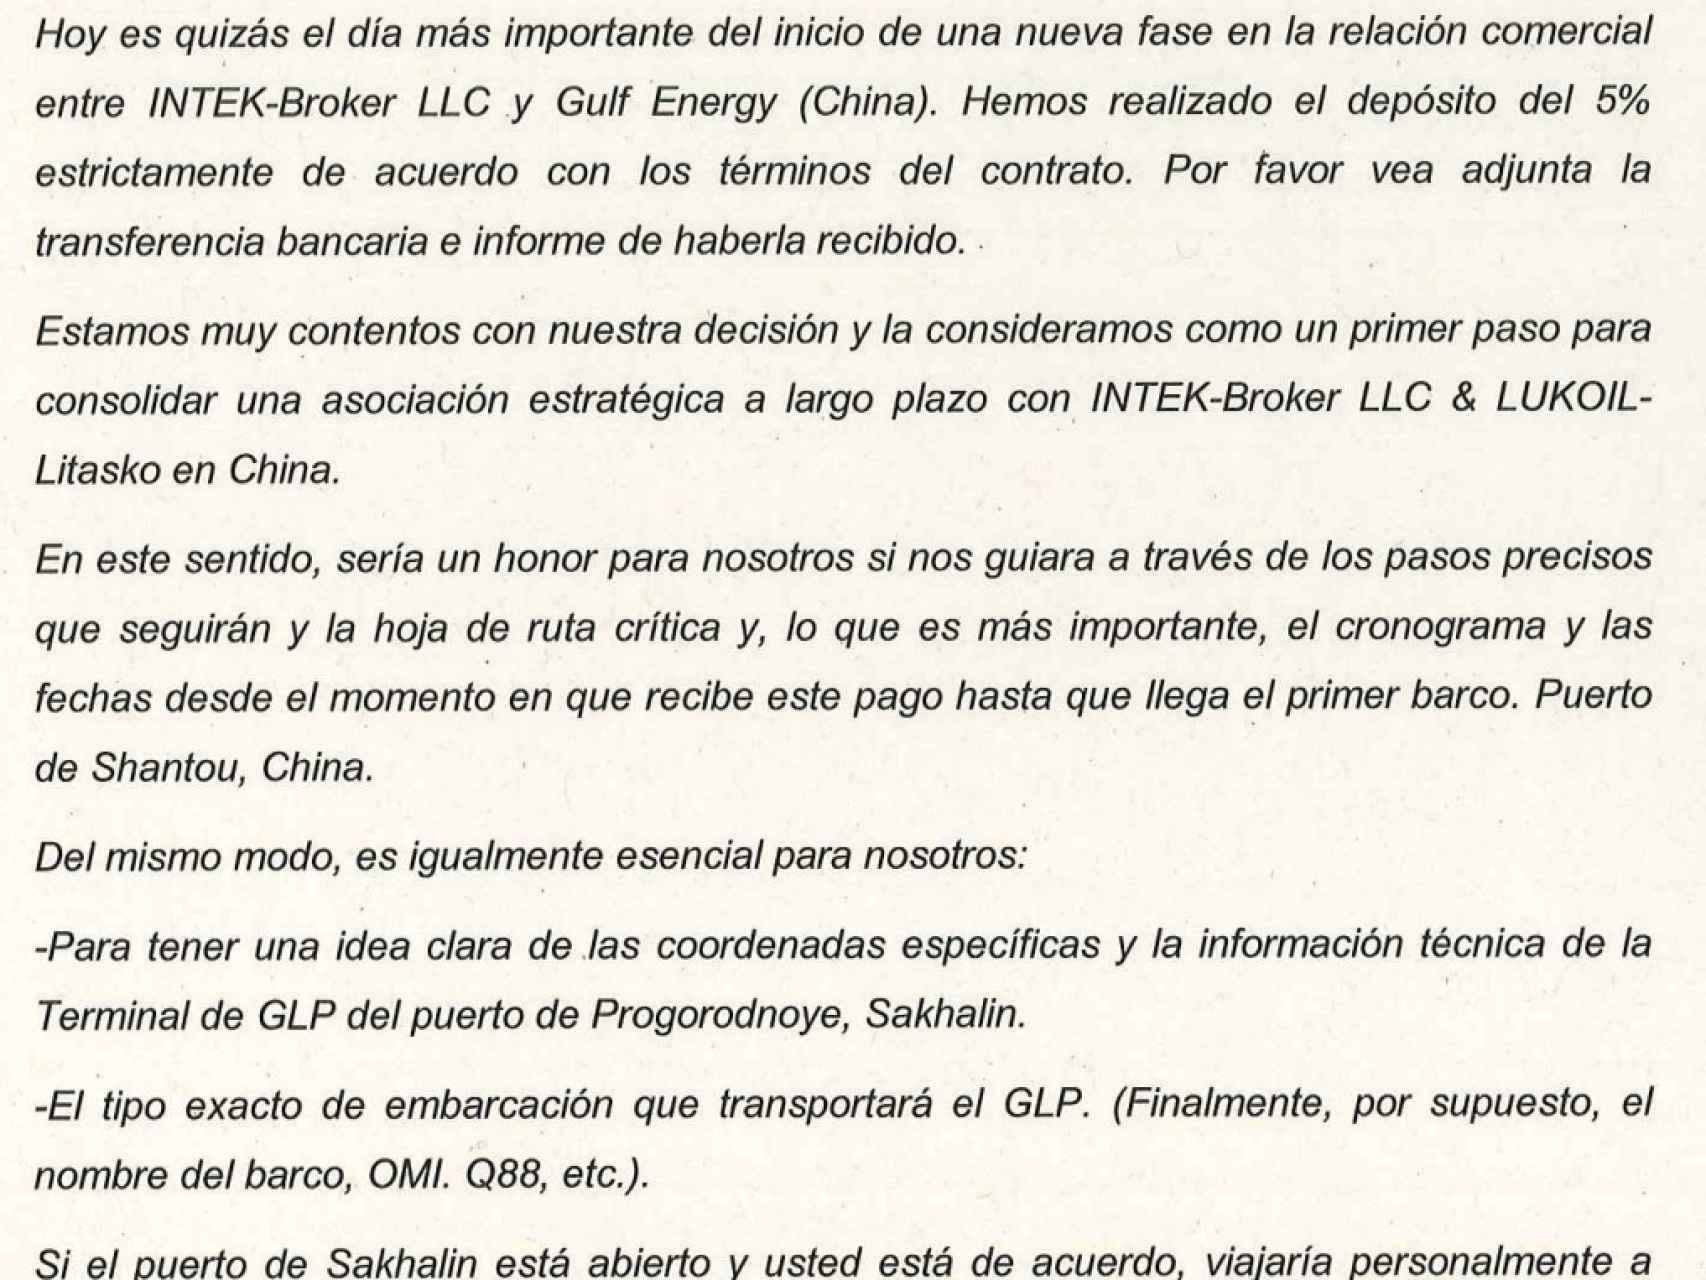 Traducción realizada por la Guardia Civil del correo electrónico enviado por el consejero delegado de la compañía china Gulf Energy, Andrés Pena.